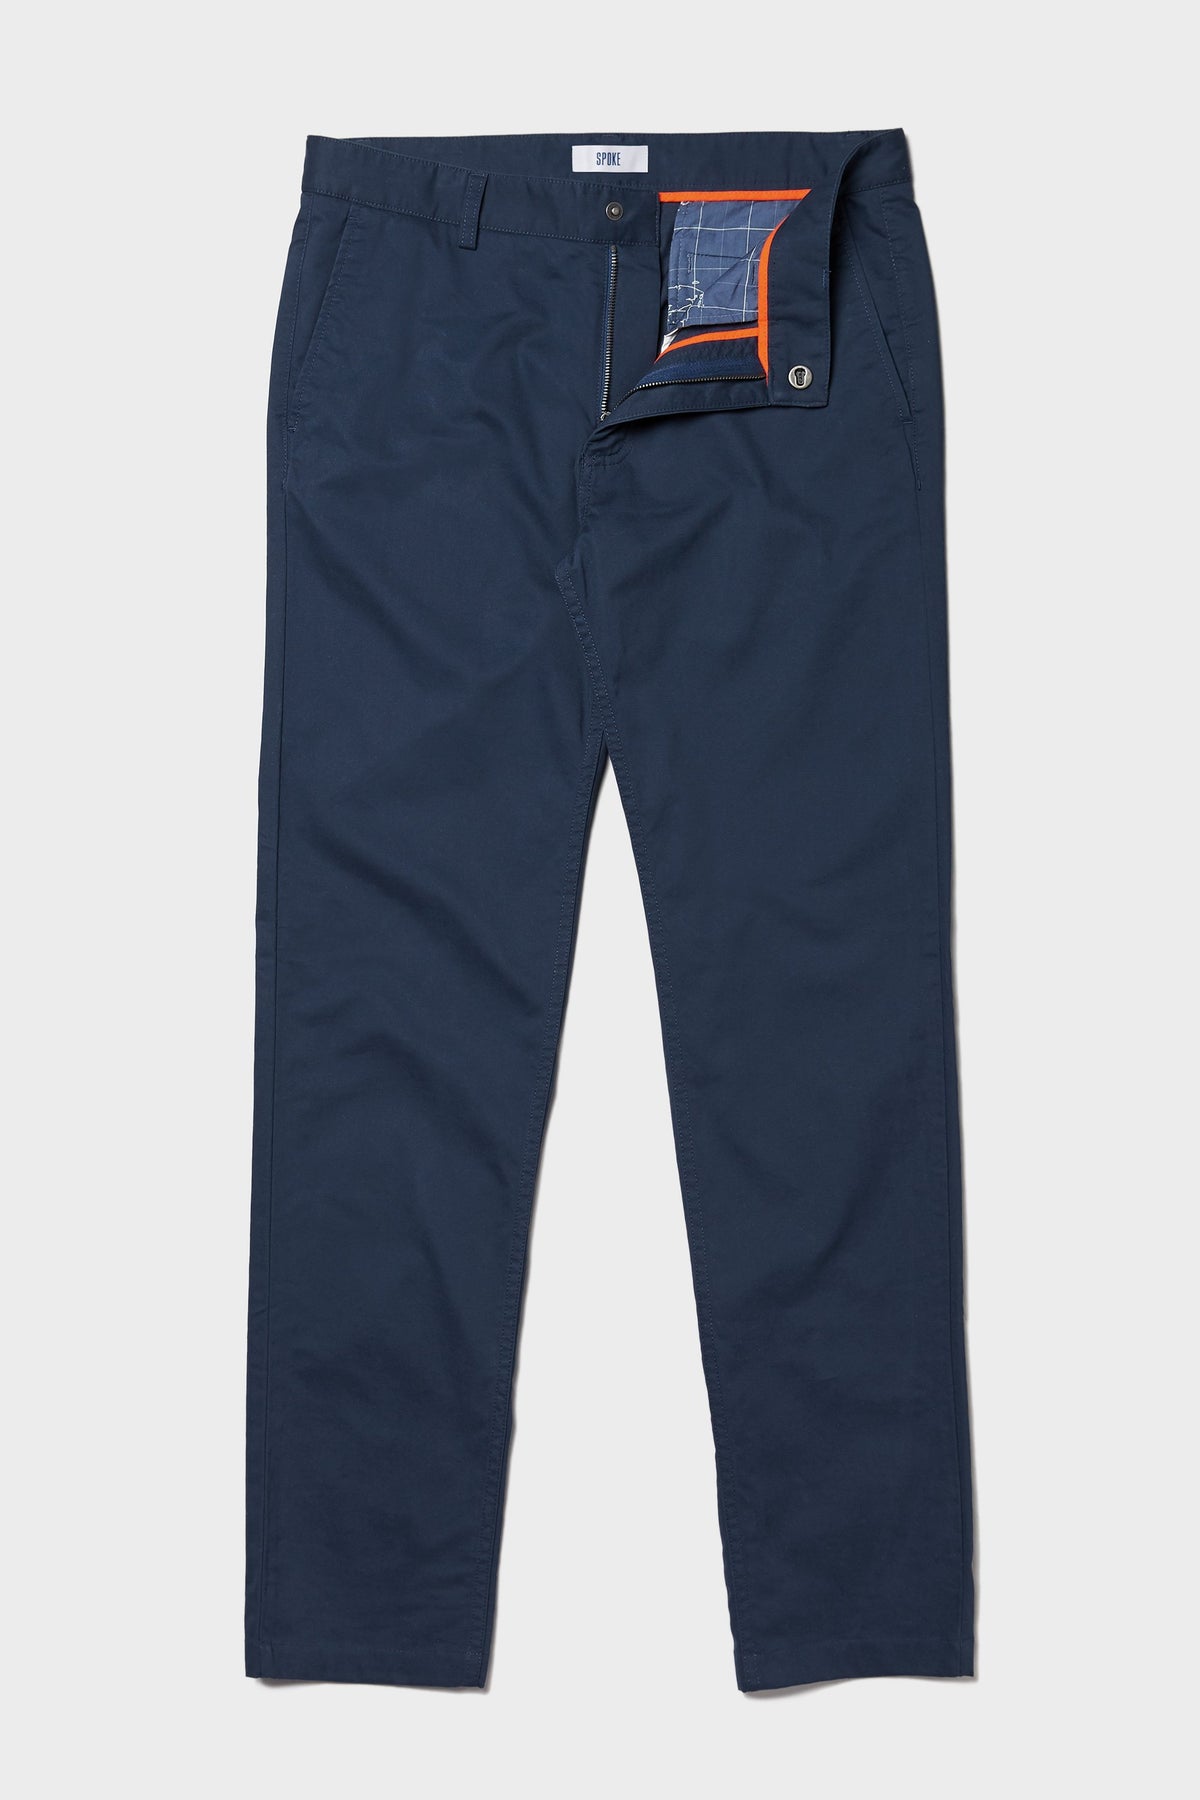 Spoke - Navy Blue Stretch Cotton Chinos - Bespoke Men's Trousers – SPOKE